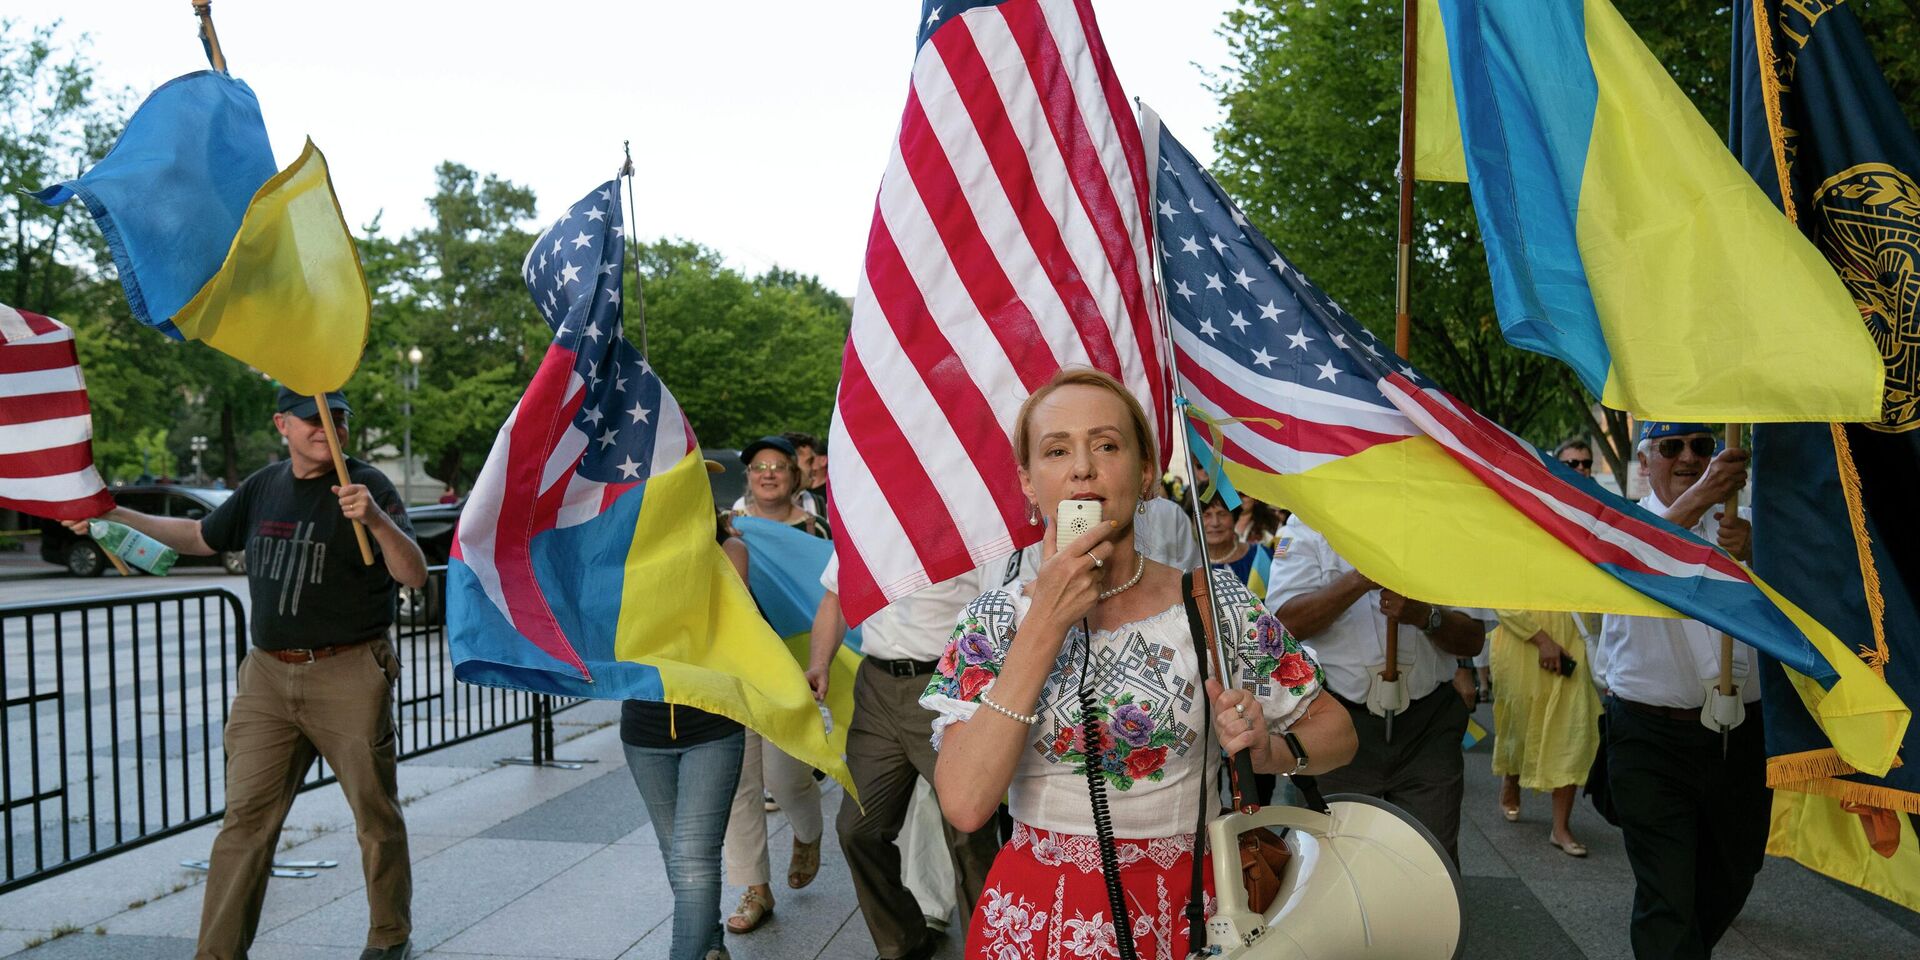 Митинг в поддержку Украины в Вашингтоне, США, в августе 2022 года - ИноСМИ, 1920, 27.09.2022